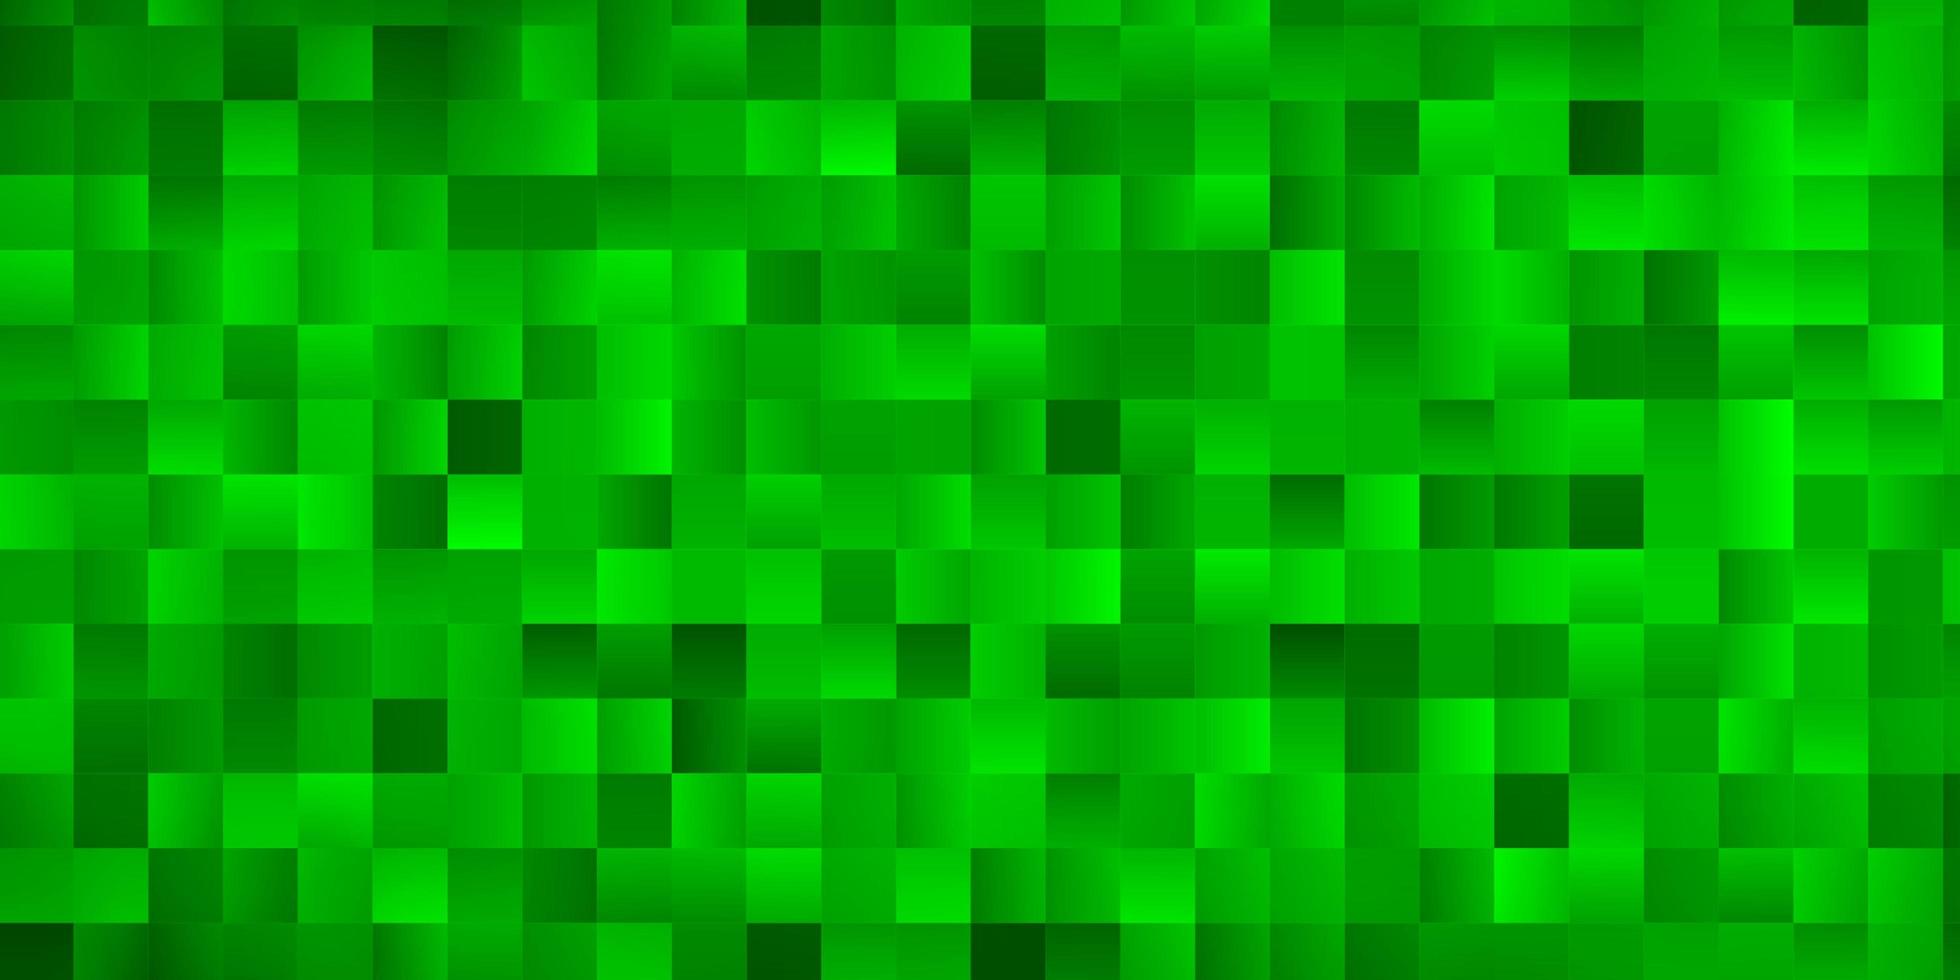 toile de fond de vecteur vert clair avec des rectangles